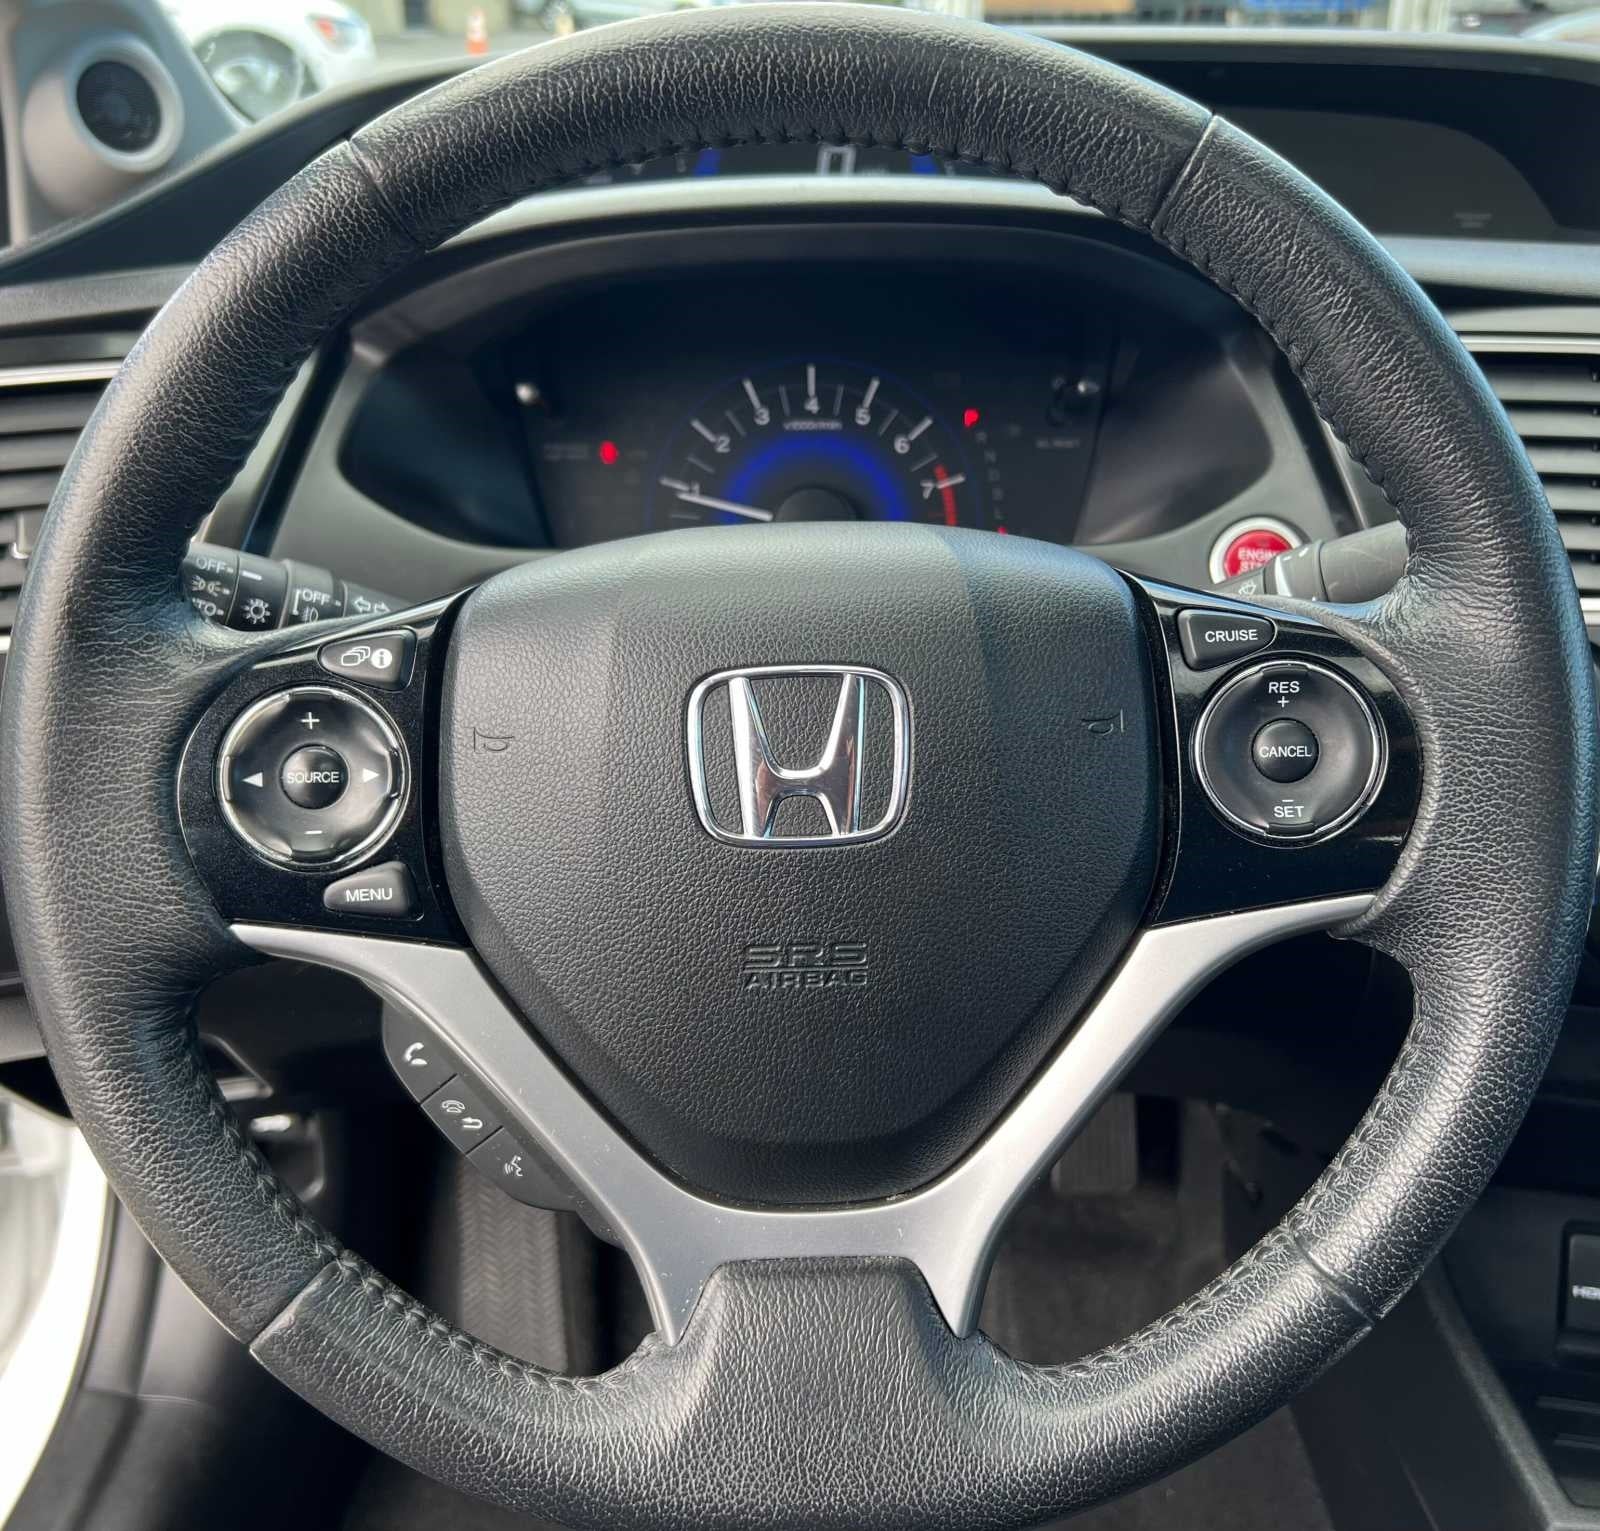 2014 Honda Civic EX-L